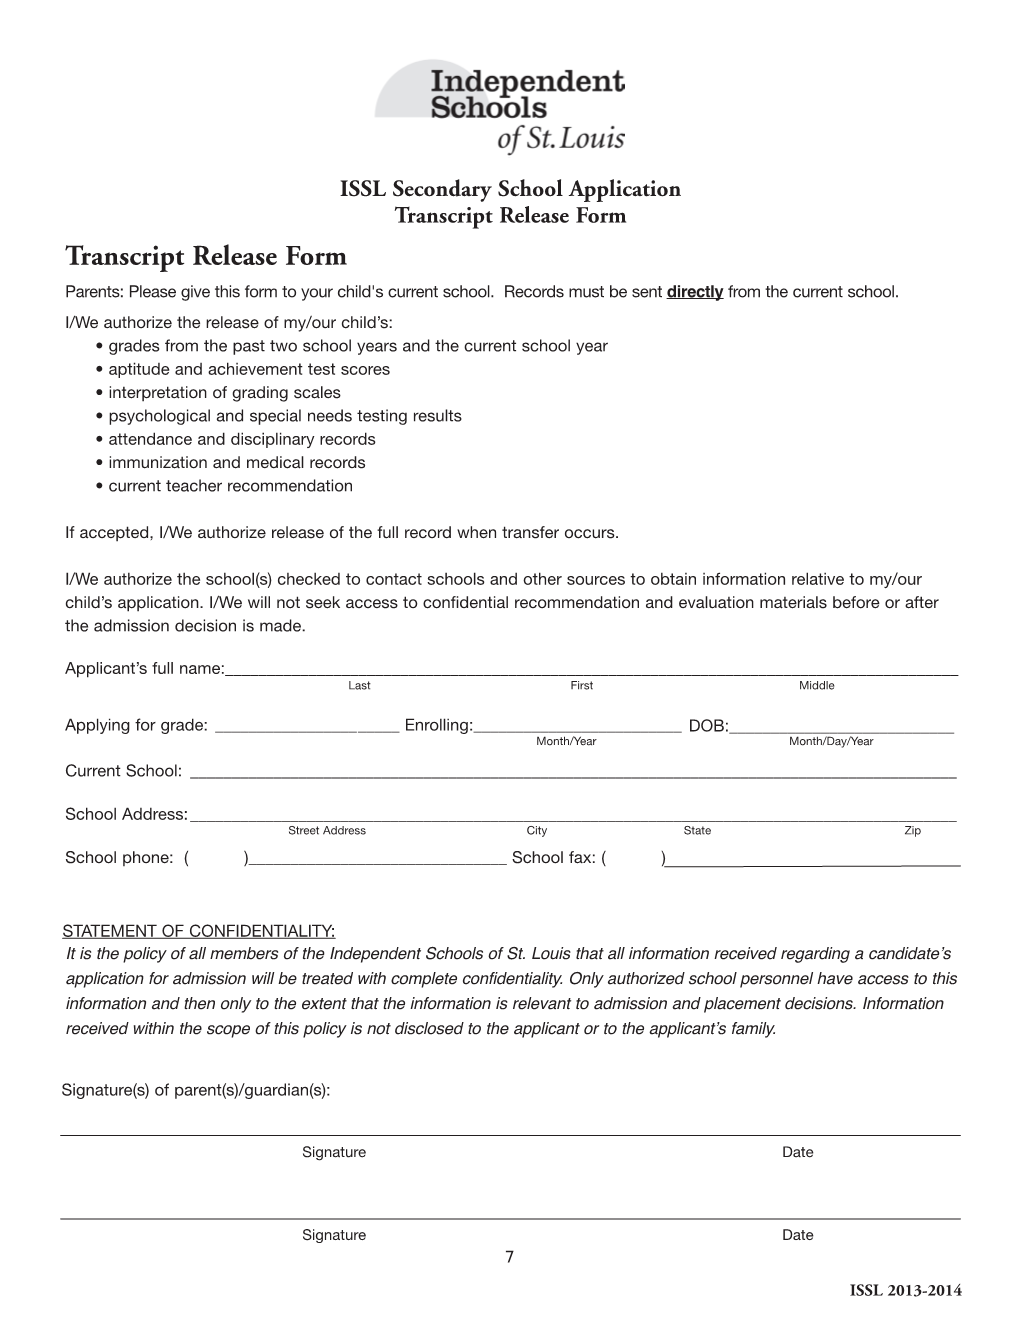 Transcript Release Form Transcript Release Form Parents: Please Give This Form to Your Child's Current School